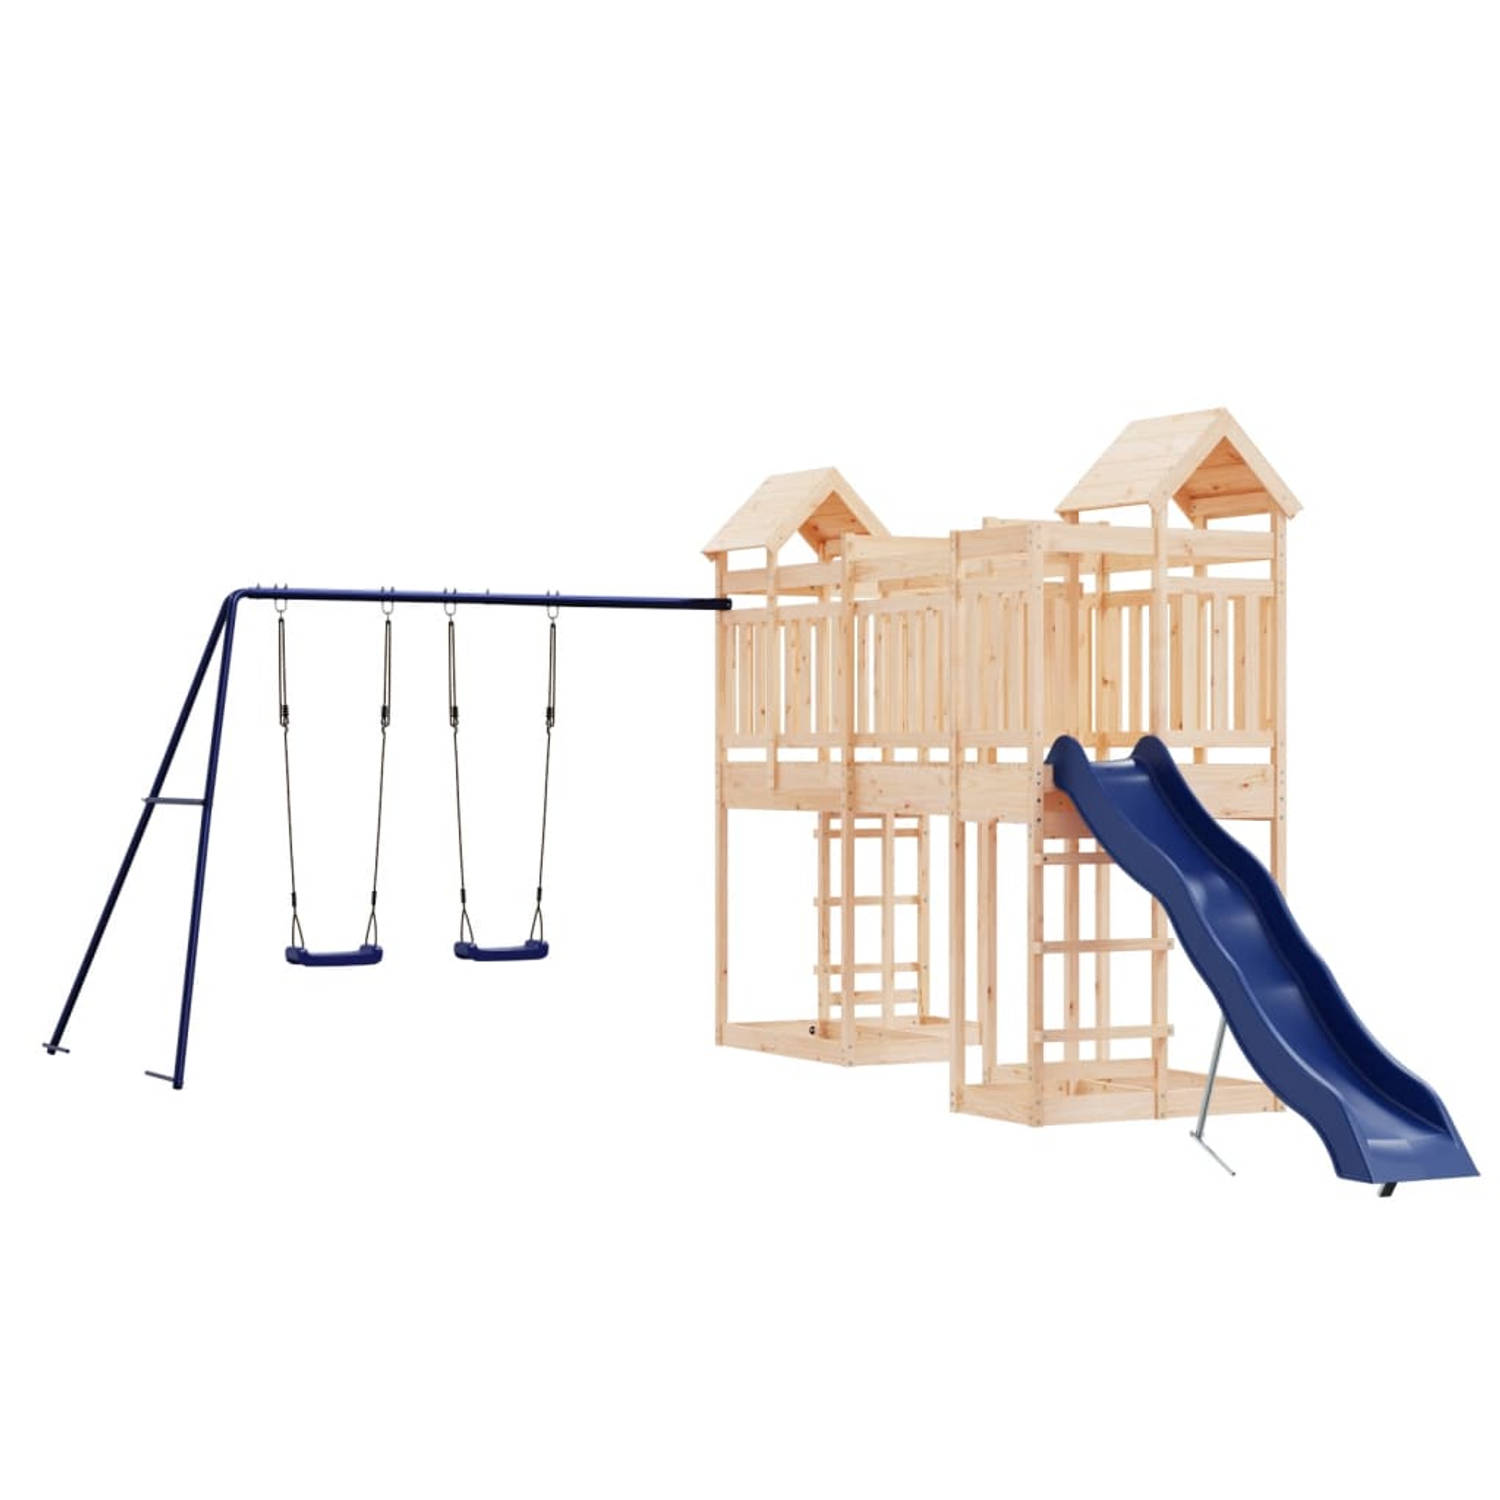 The Living Store Speeltorens met brug - Massief grenenhout - 362 x 585 x 238 cm - Inclusief glijbaan en dubbele schommelset - Voor kinderen van 3-8 jaar oud - Maximaal gewicht 45 k